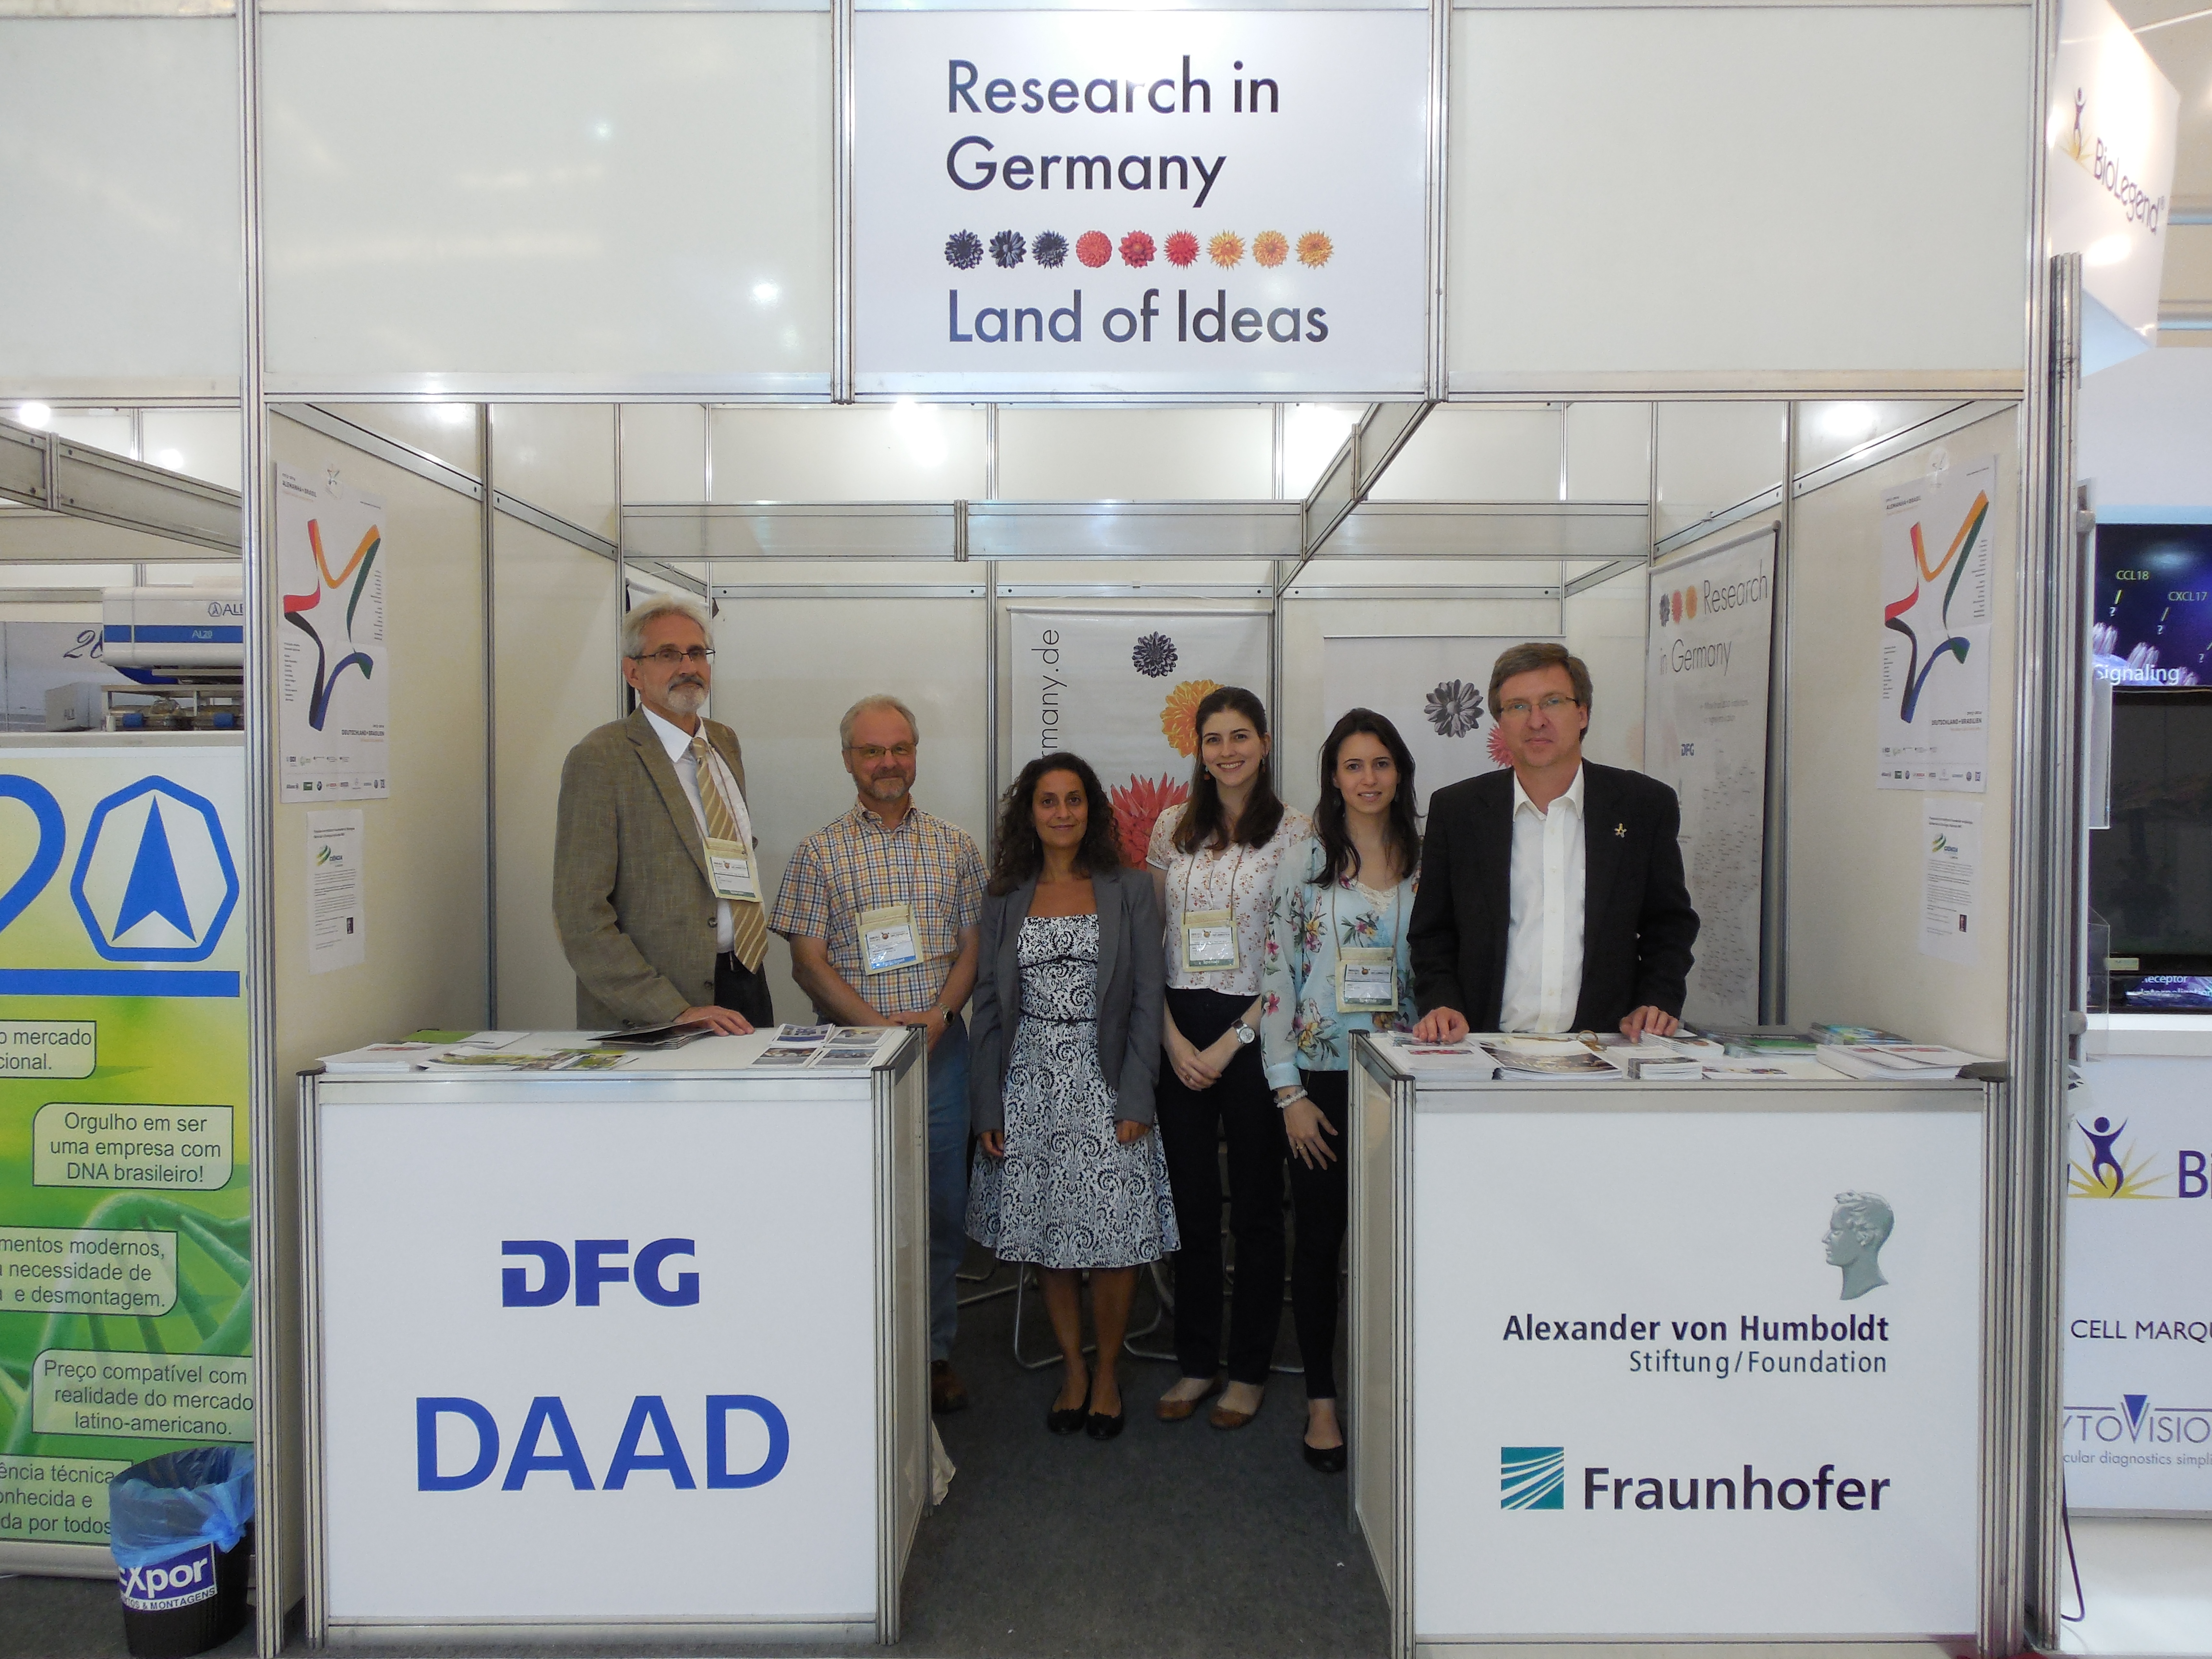 Representantes das instituições presentes no estande Research in Germany no congresso de imunologia